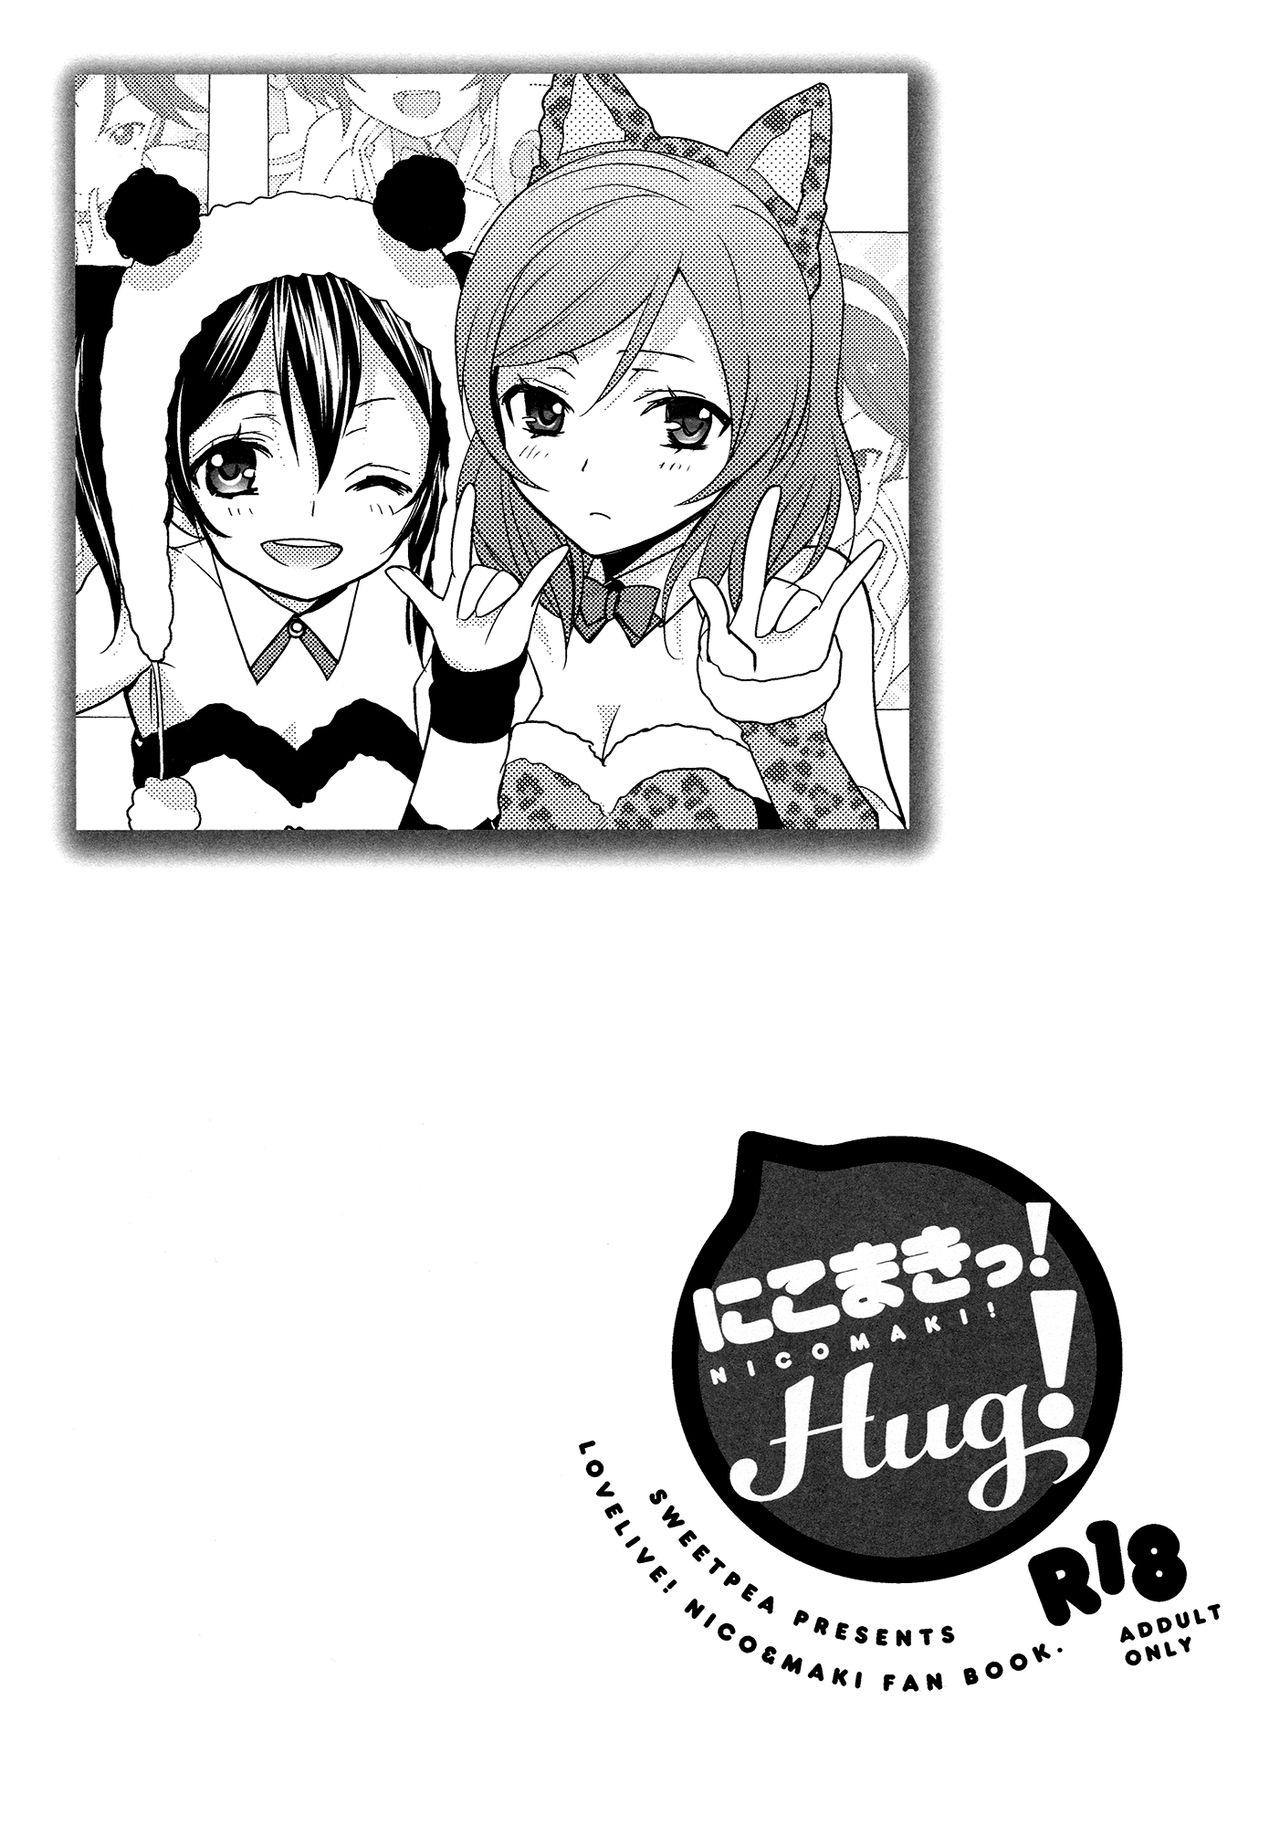 NicoMaki! HUG! 3